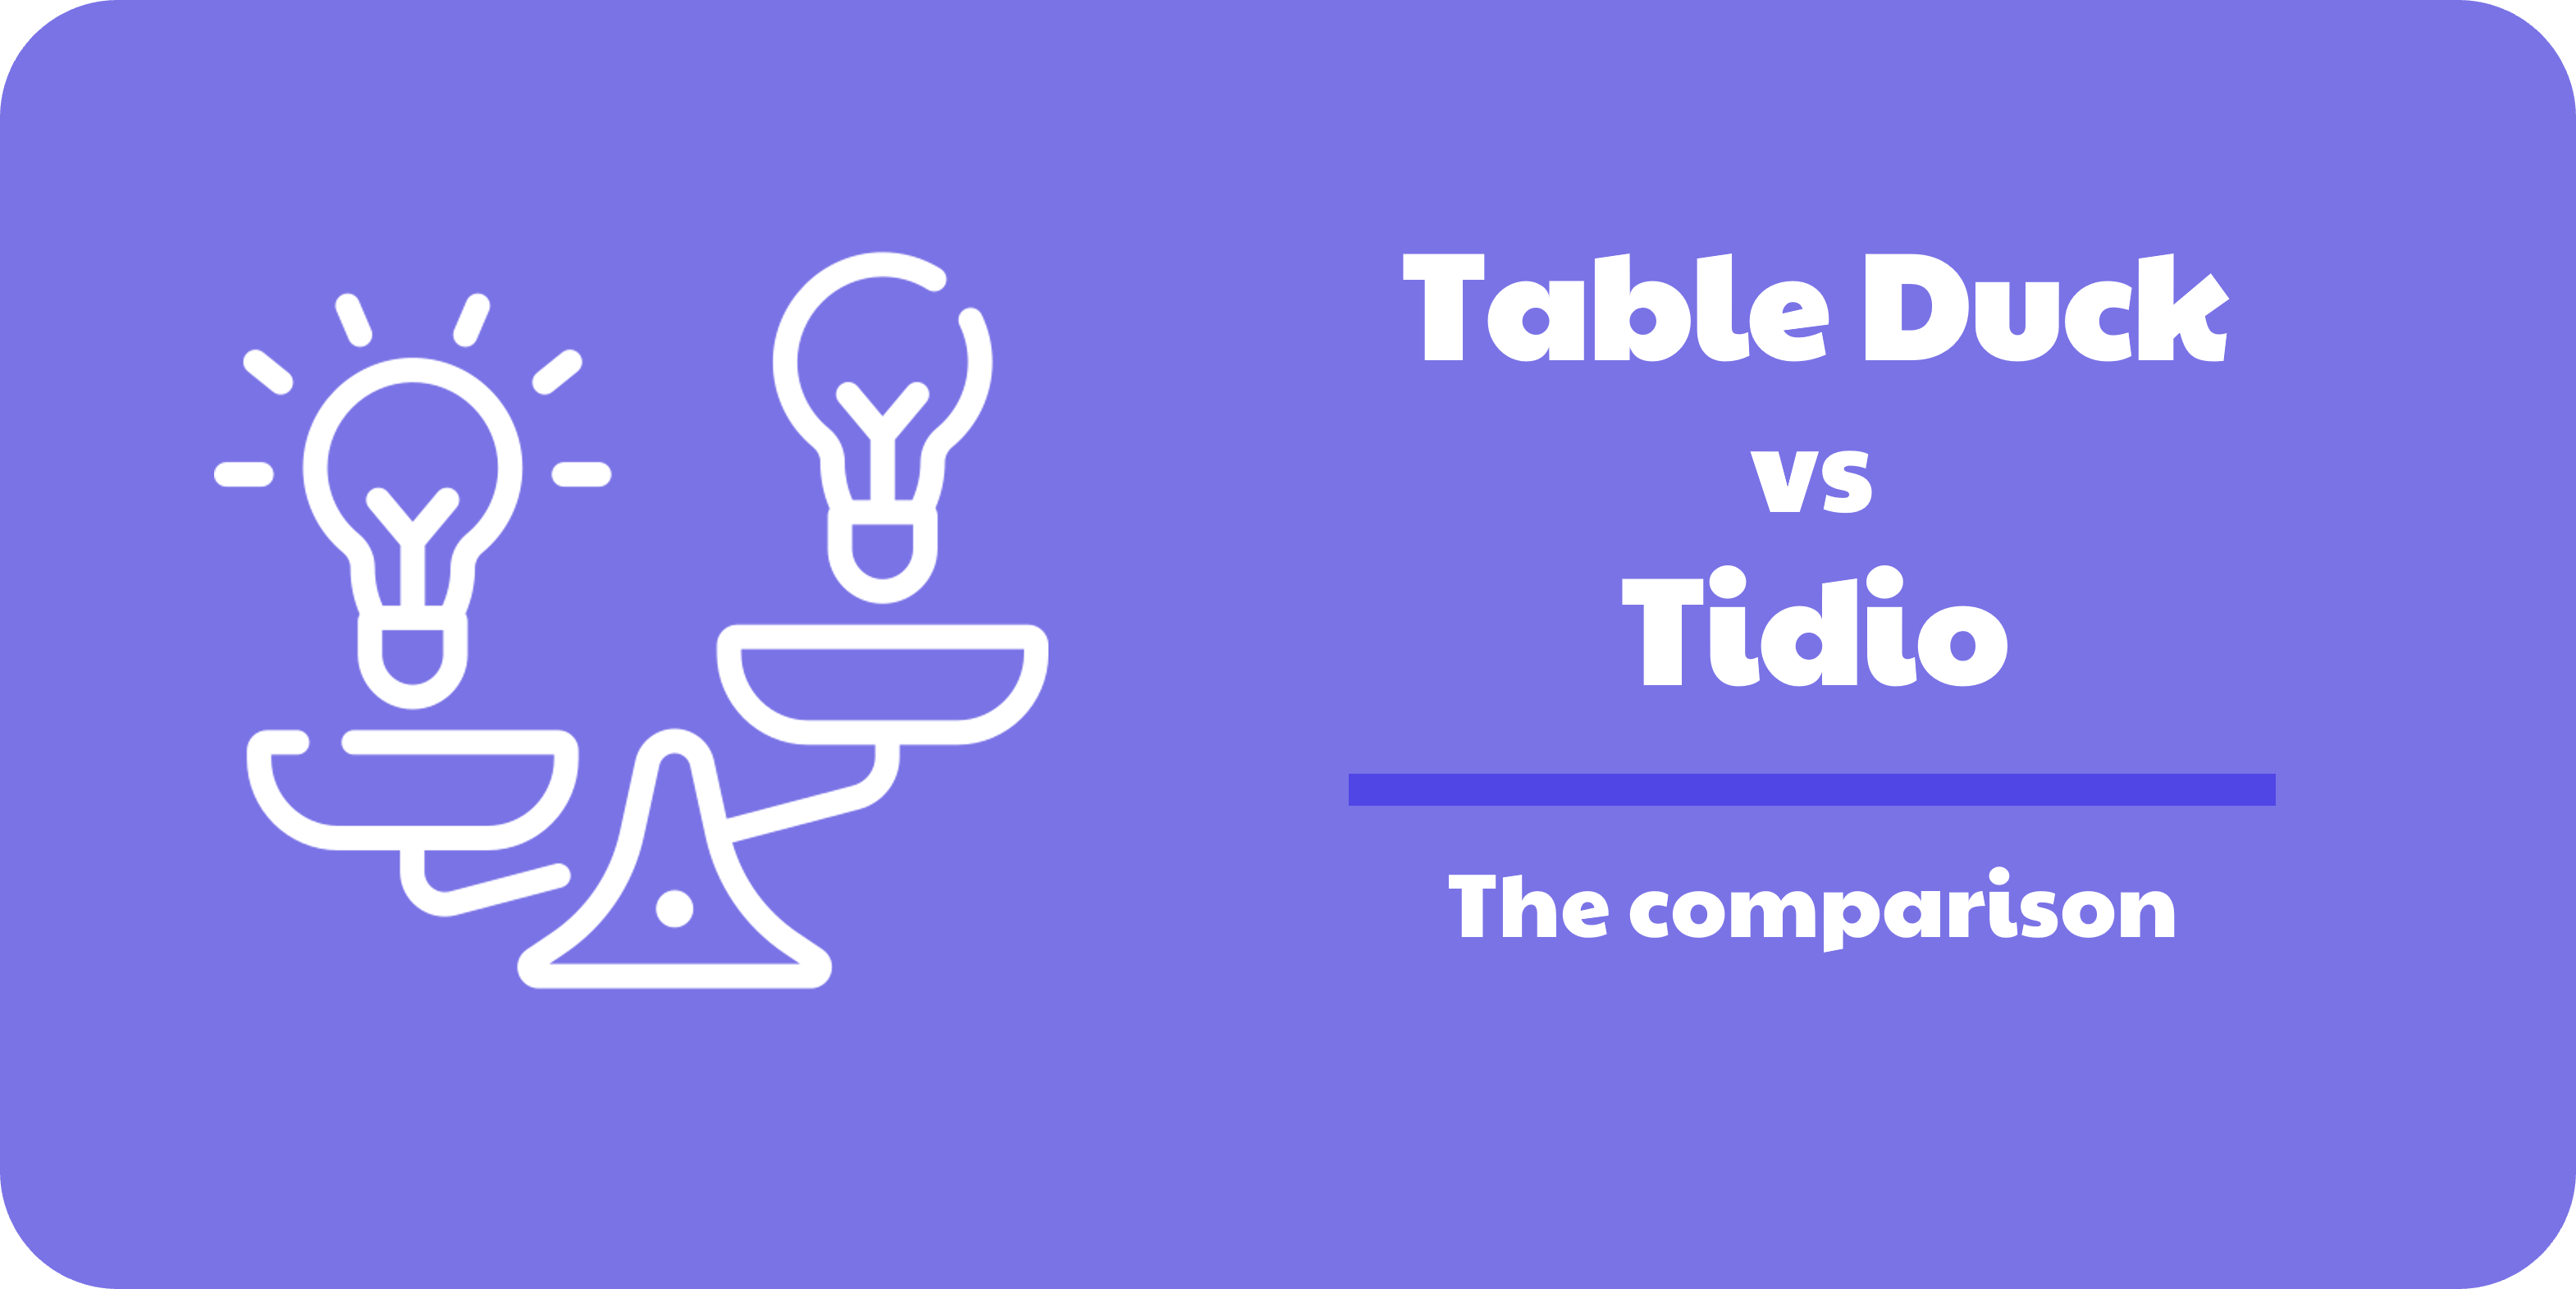 Table Duck, the alternative for Tidio